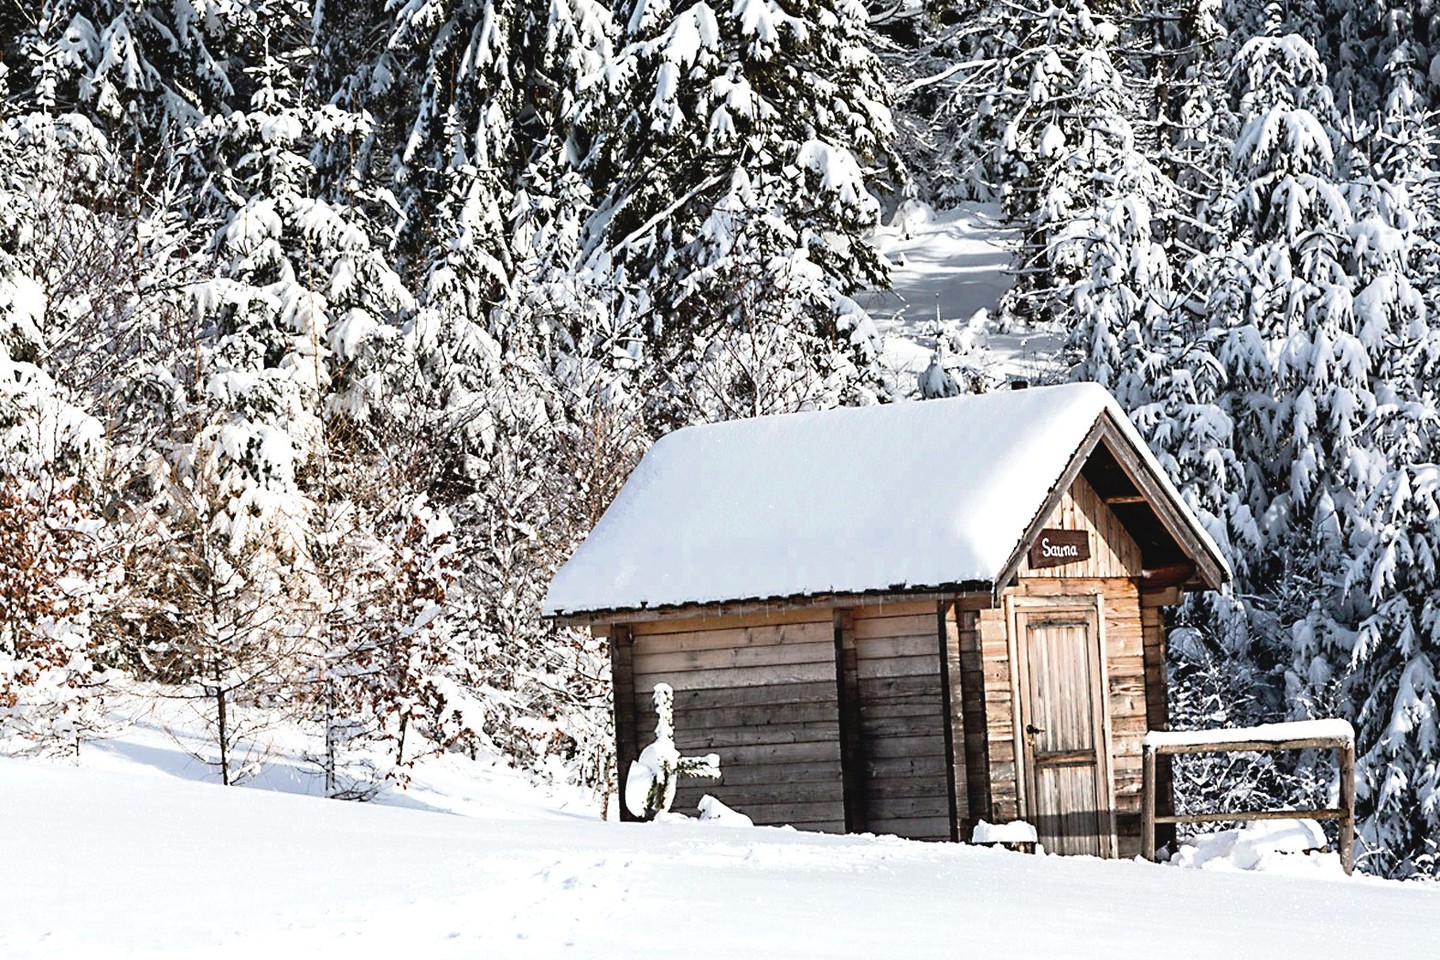 Tokie gražūs žiemos vaizdai, kuriais yra kviečiama aplankyti Lietuvą, buvo nufotografuoti ne mūsų šalyje.<br>„Shutterstock“ nuotr.